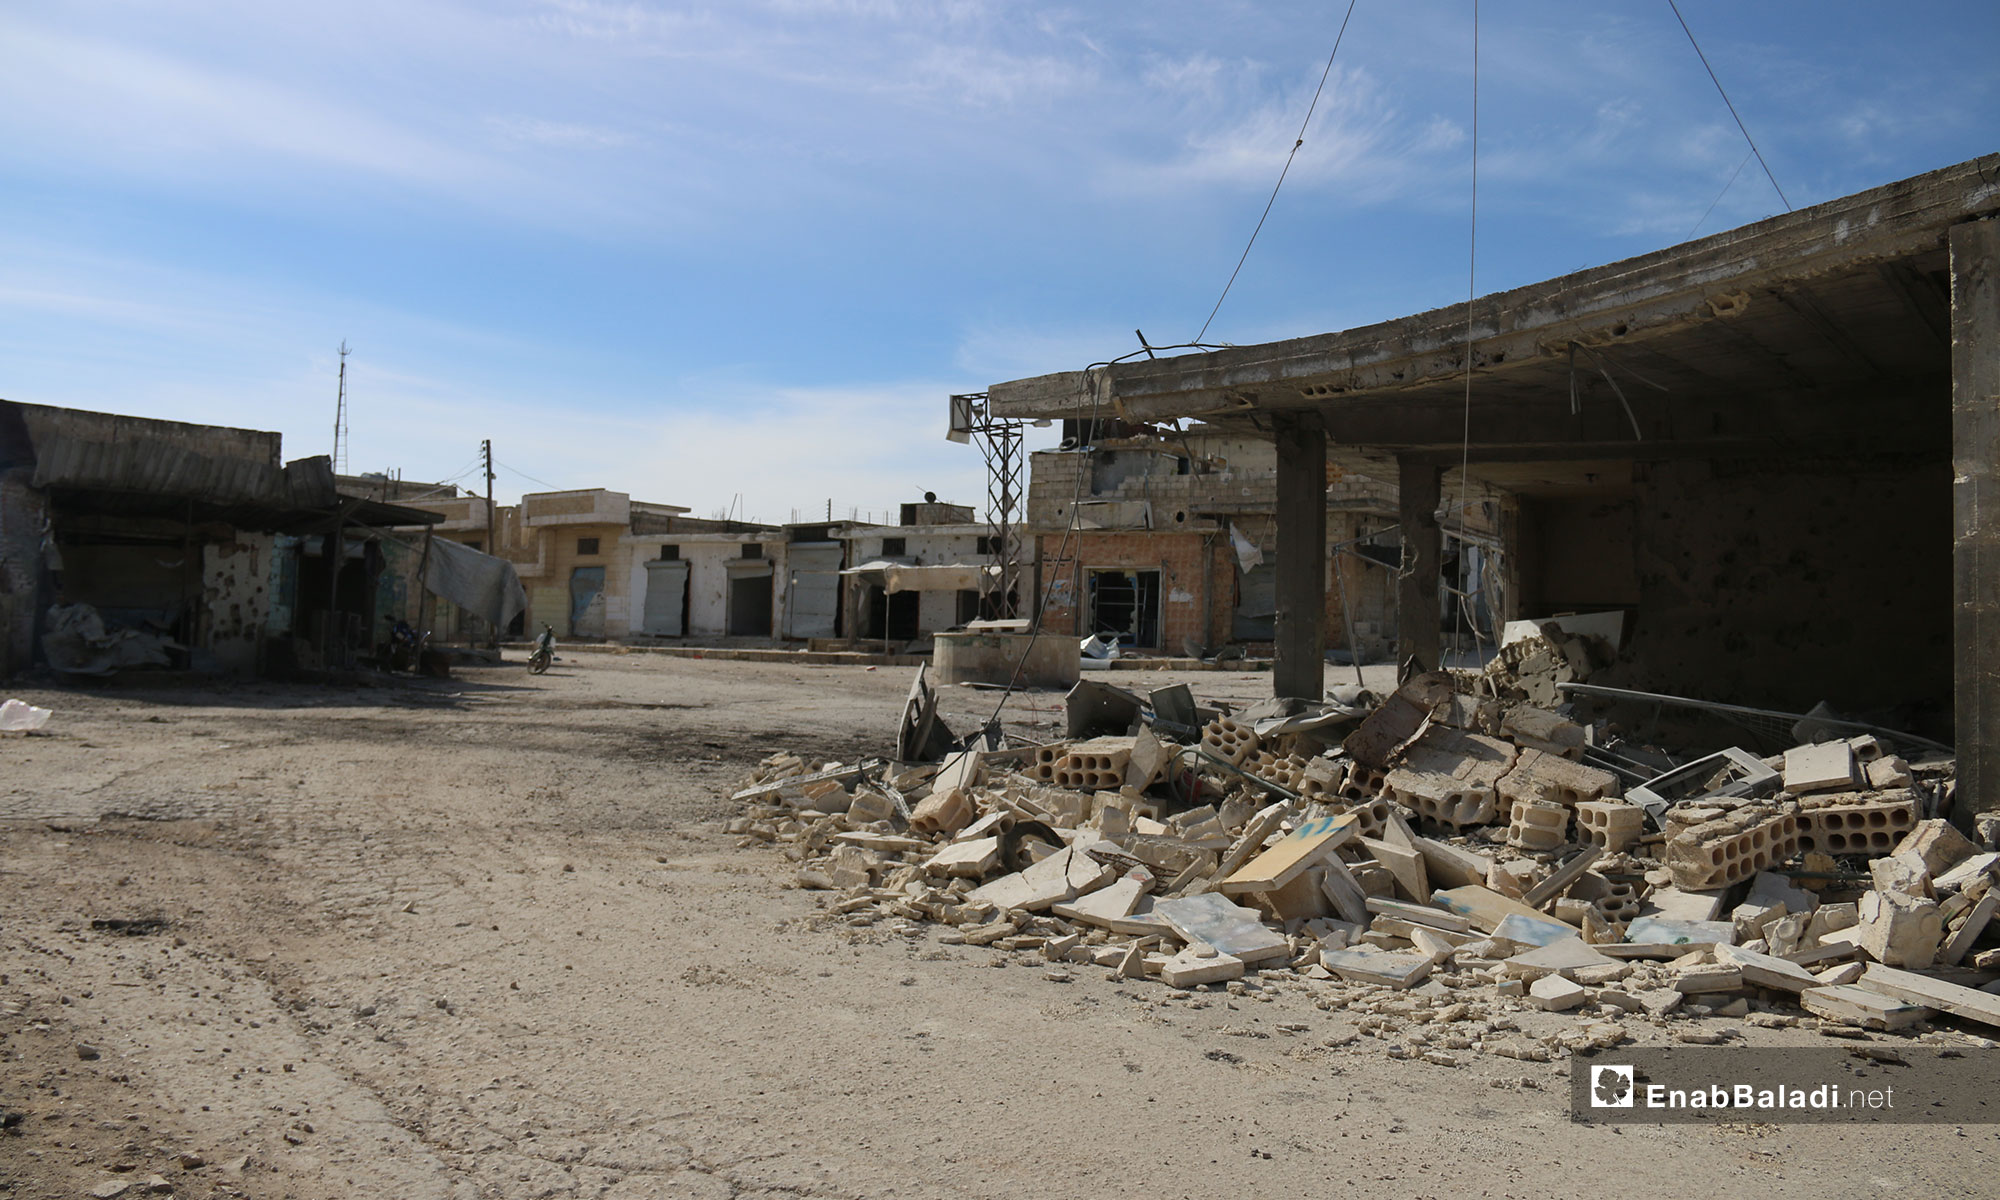 آثار الدمار الذي خلفه القصف في بلدة التح بريف إدلب - 4 من شباط 2019 (عنب بلدي)